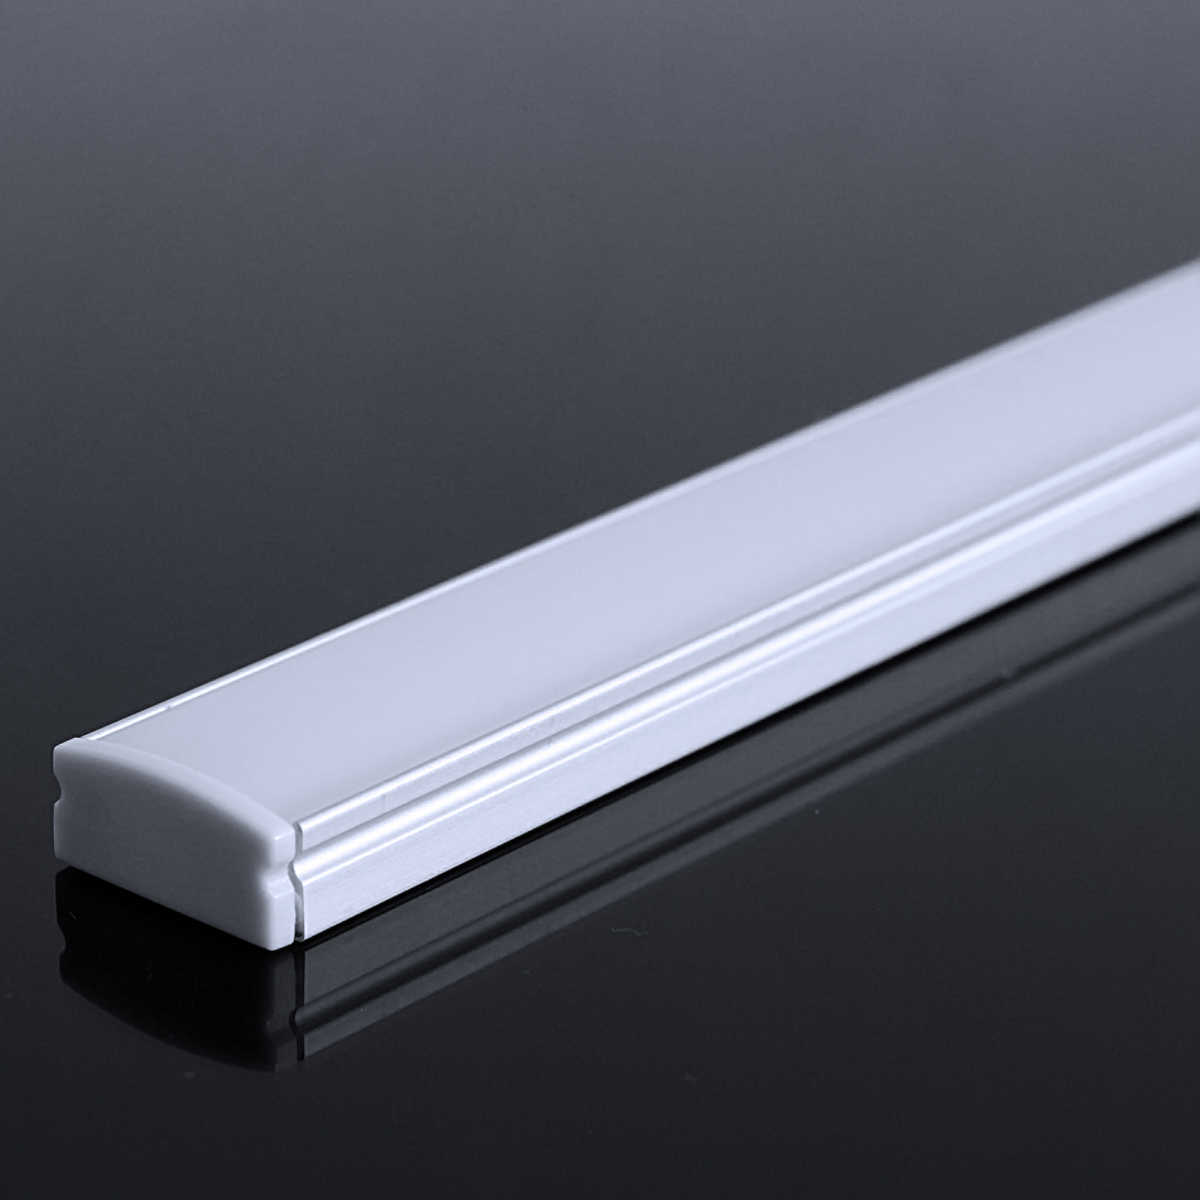 LED Flachprofil "Slim-Line" | Abdeckung diffus | Zuschnitt auf 141cm |